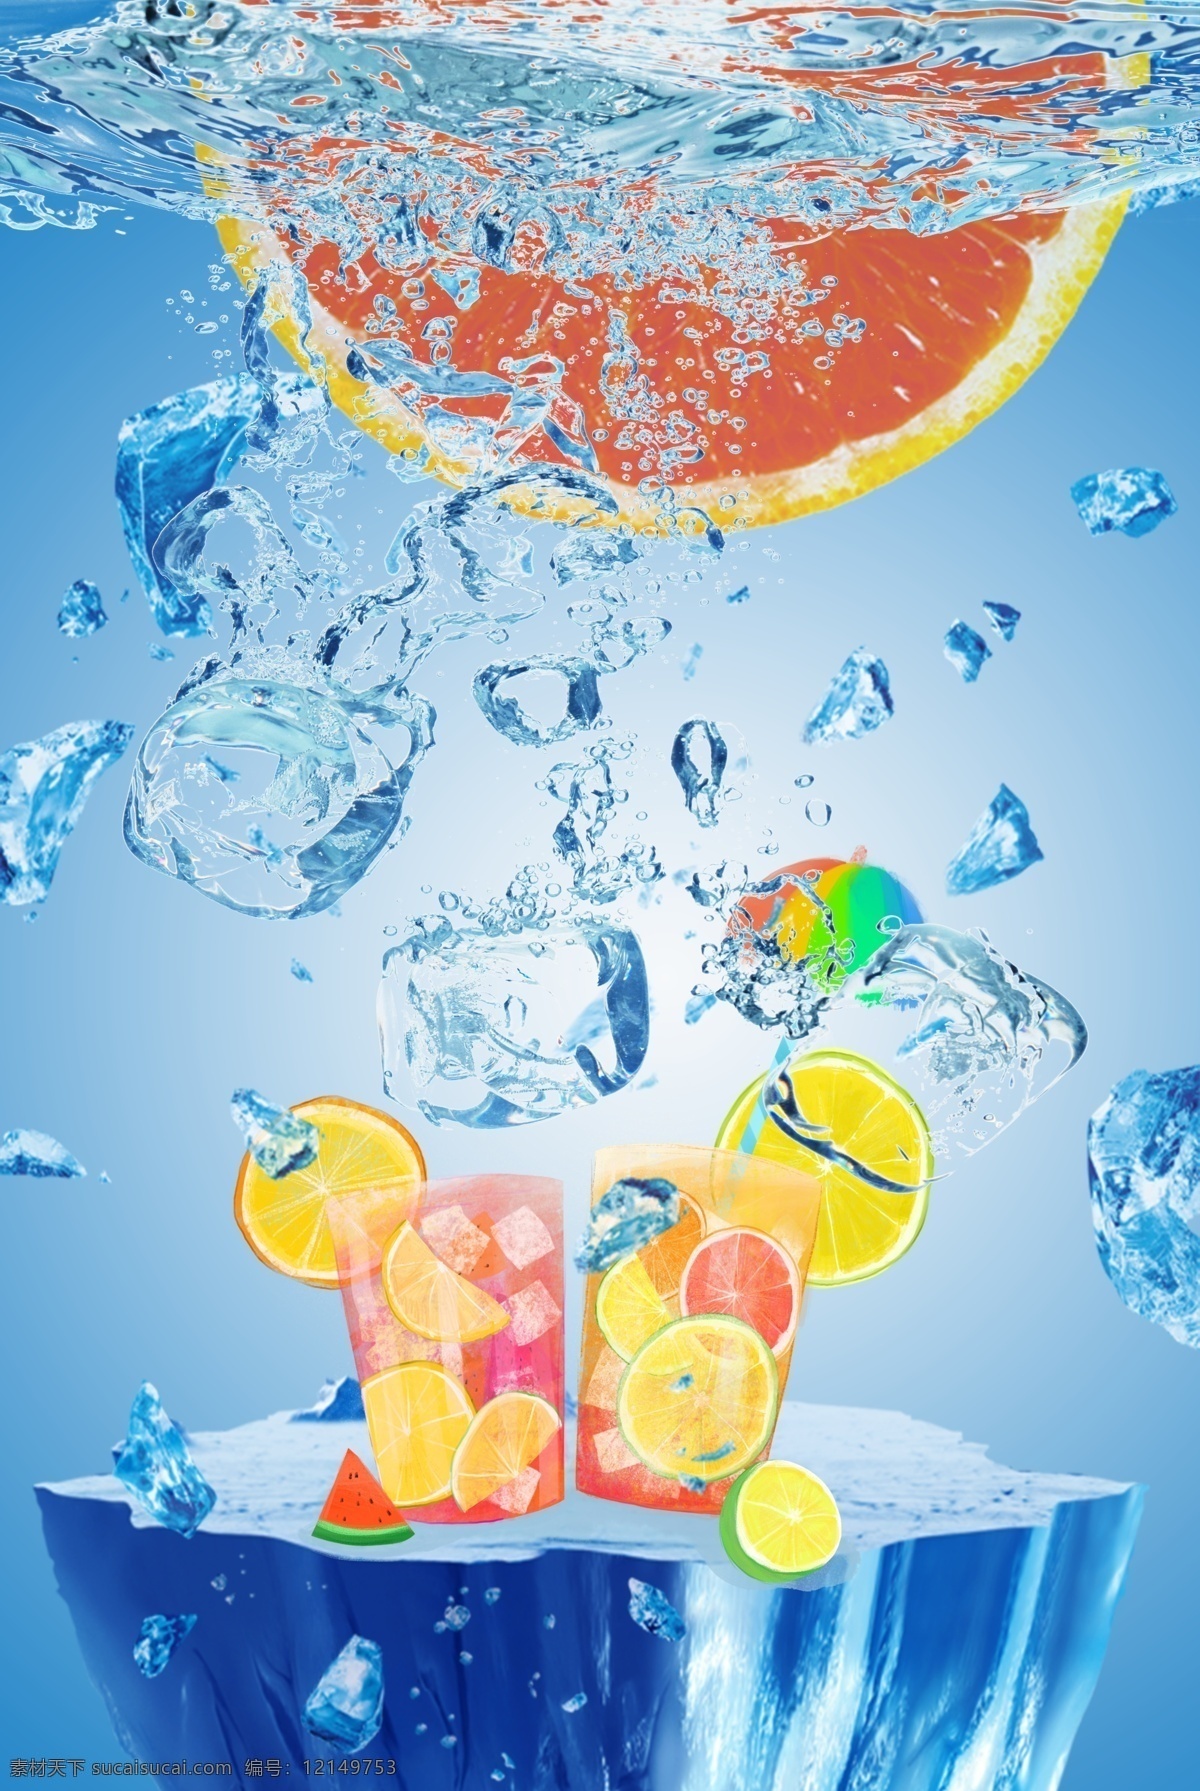 清凉 夏日 冰 爽 橙子 凉 饮 冰块 冰饮 蓝色 饮料 夏天